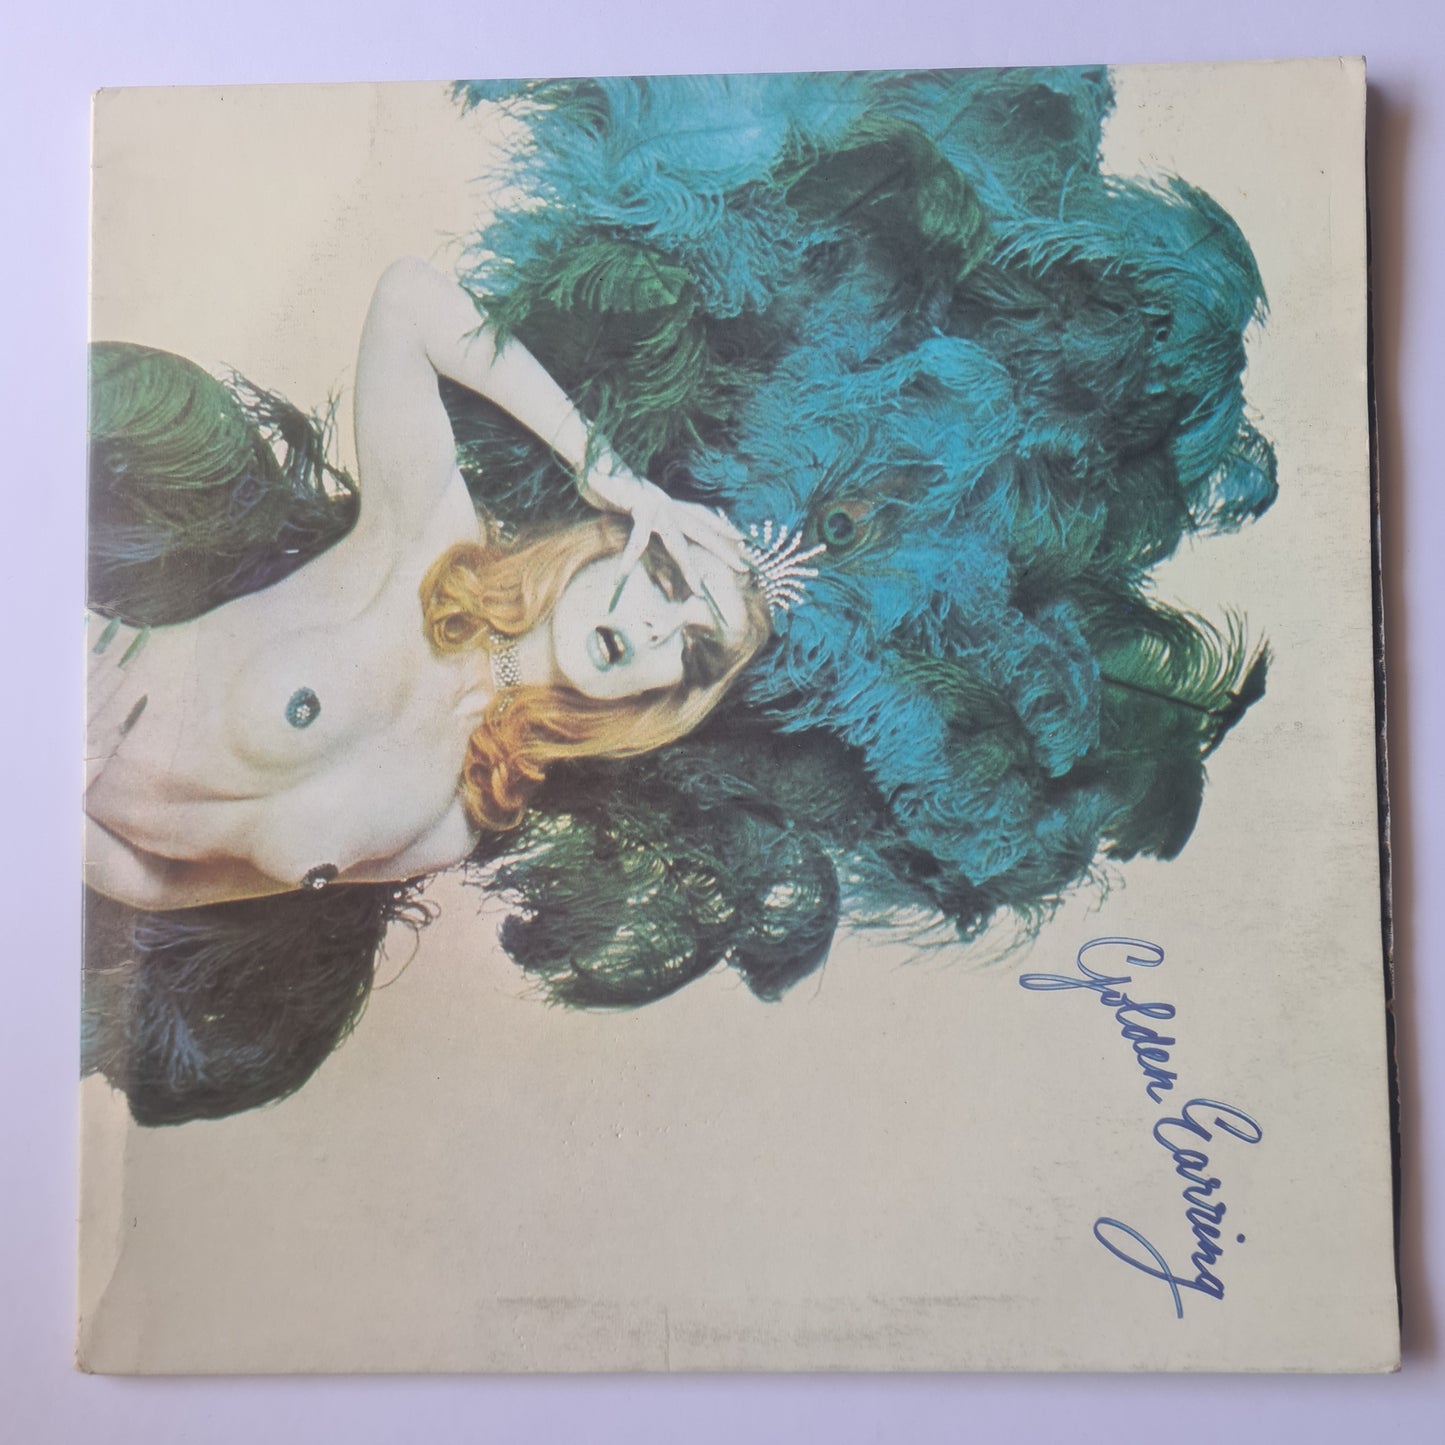 Golden Earring – Moontan - 1973 (Gatefold) - Vinyl Record